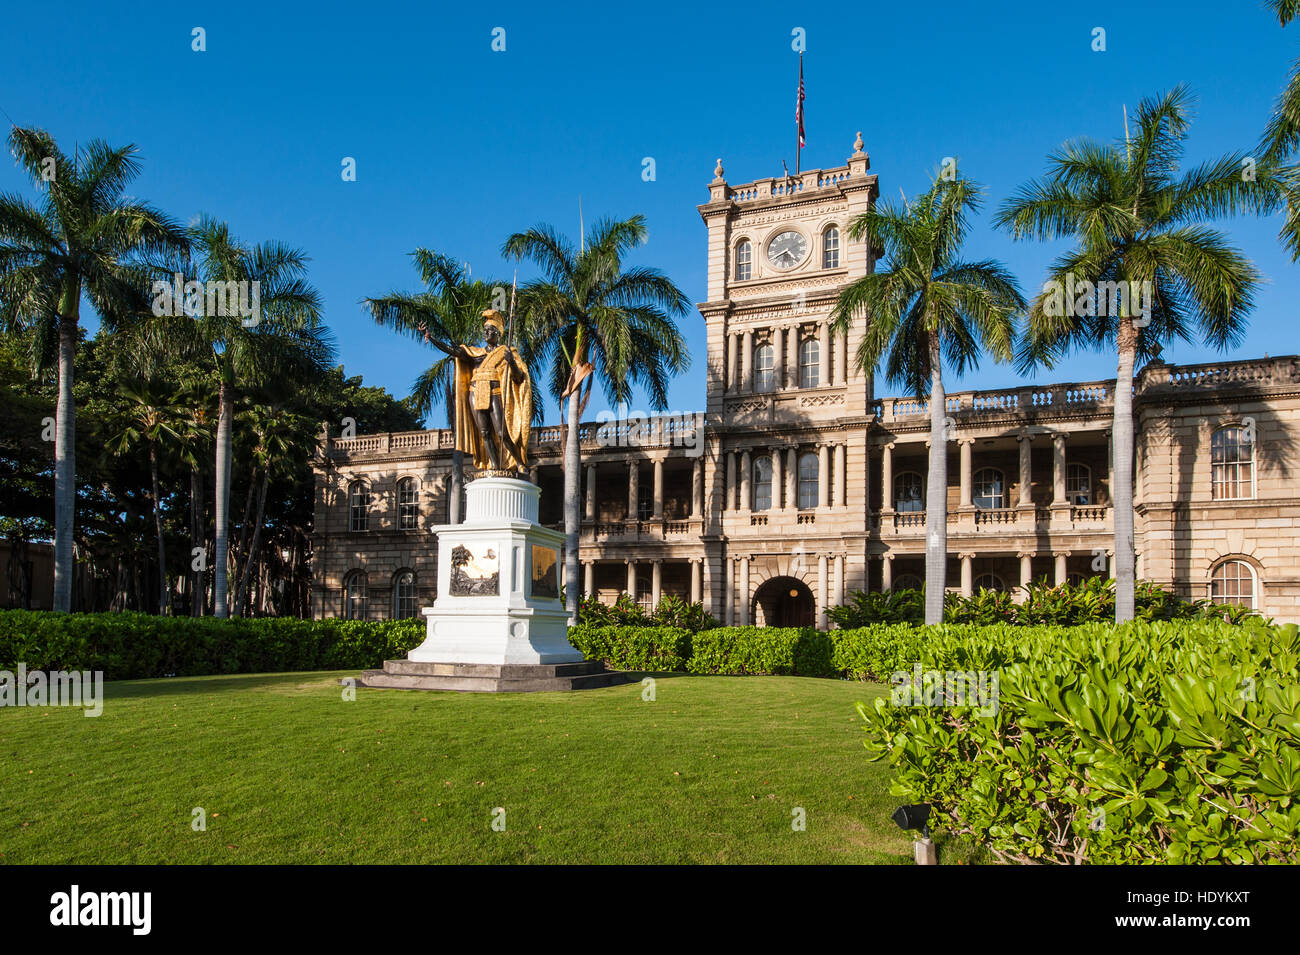 La estatua del rey Kamehameha, está delante de Aliiolani Hale (Tribunal Supremo) del Estado de Hawaii, Honolulu, Oahu, Hawaii. Foto de stock